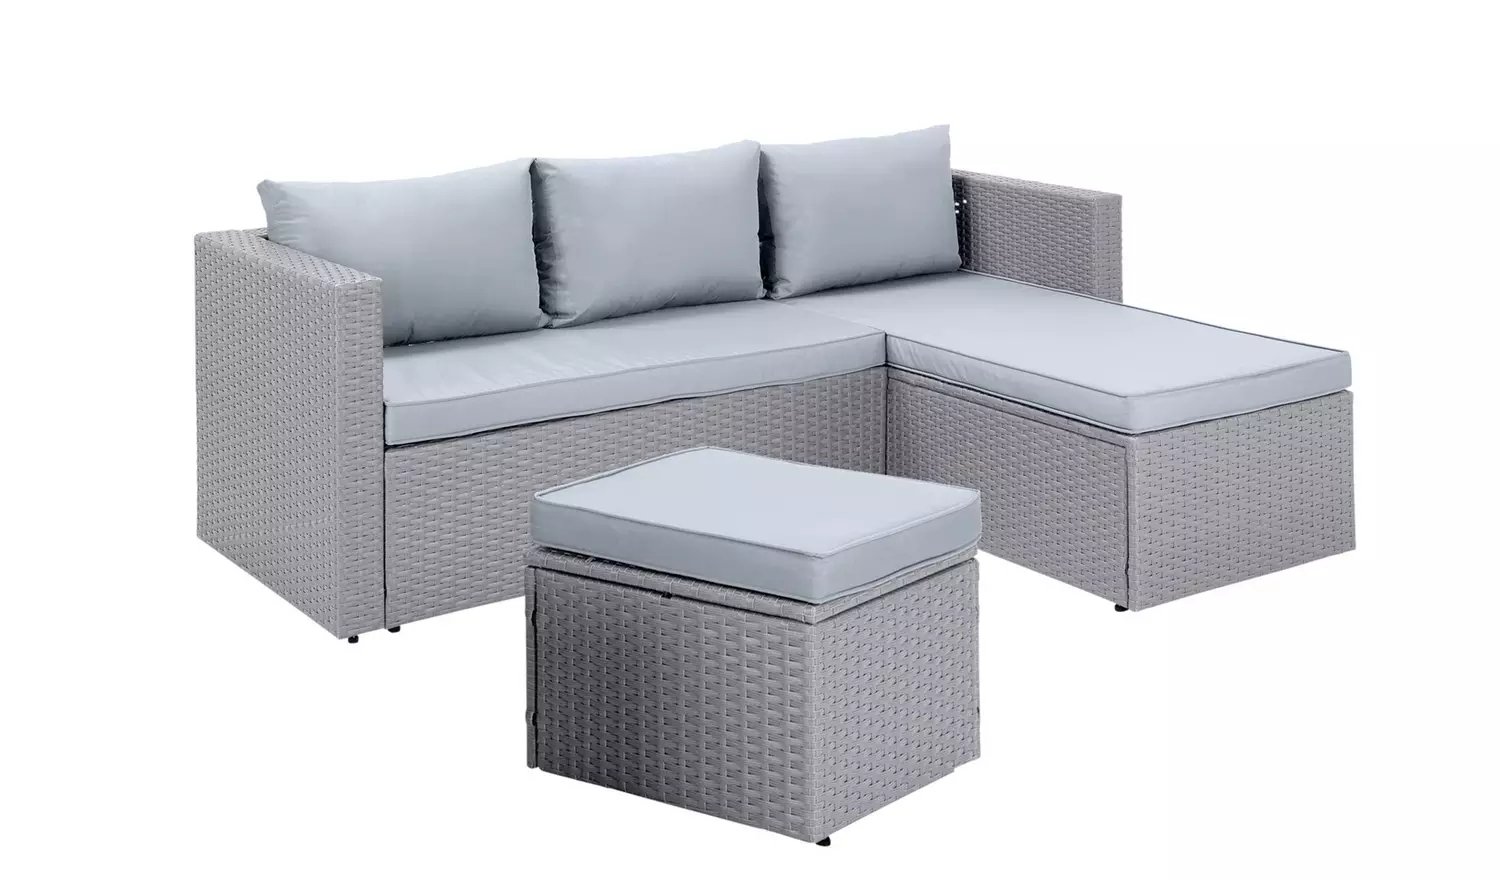 Habitat Mini Corner Garden Sofa Set With Storage 240 6 95 Delivery At Argos Hotukdeals - Keter Garden Furniture Sets Argos